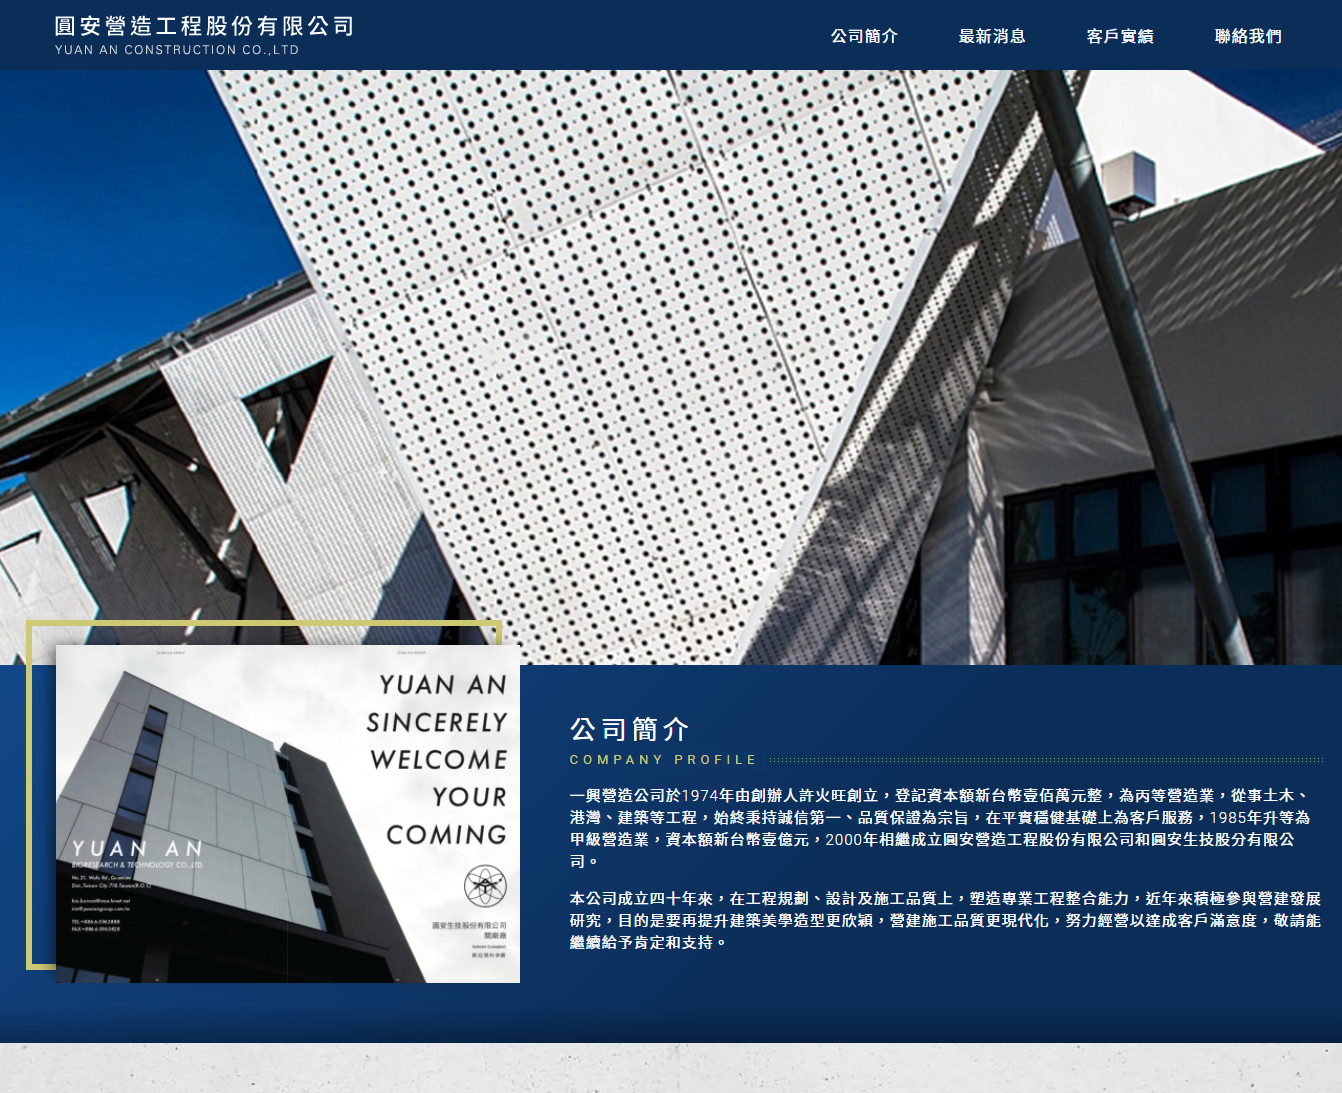 圓安營造工程股份有限公司 RWD響應式網頁設計
網站設計